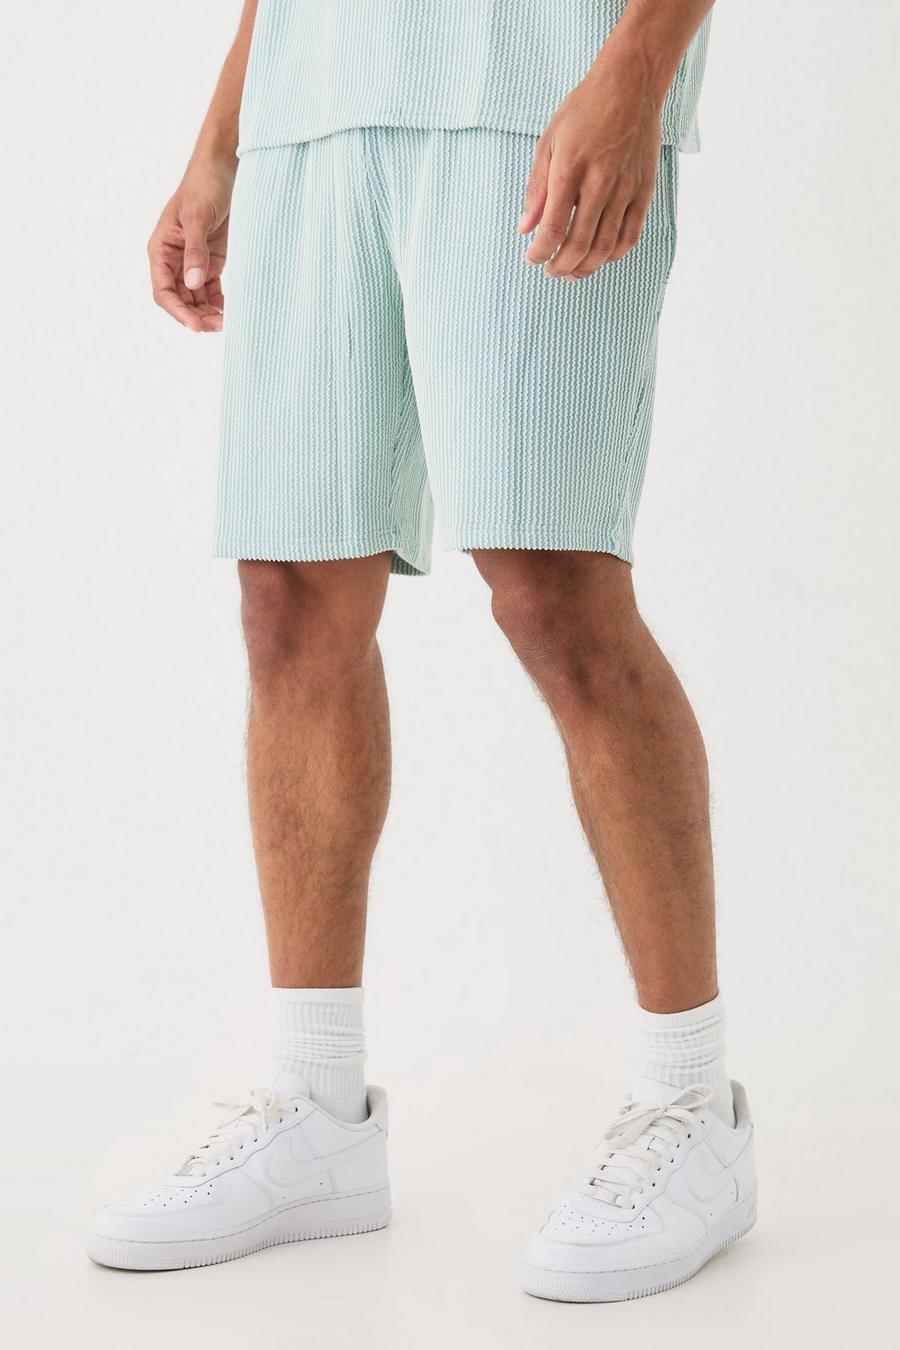 Dusty blue Mellanlånga randiga shorts med ledig passform